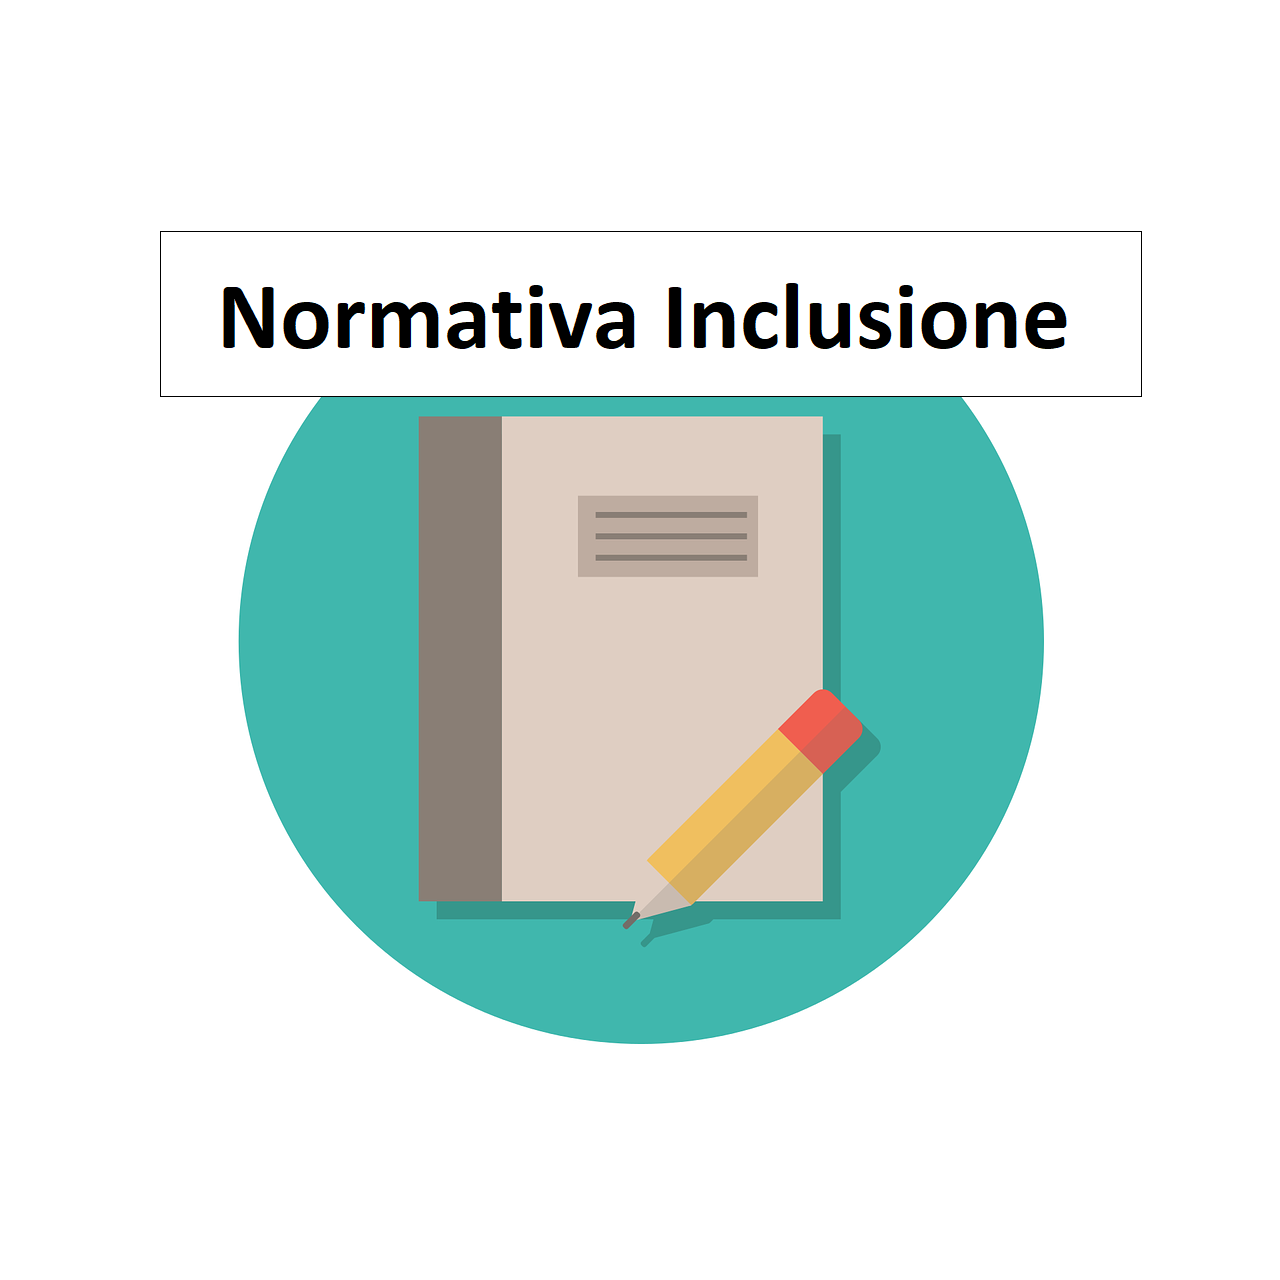 Normativa inclusione